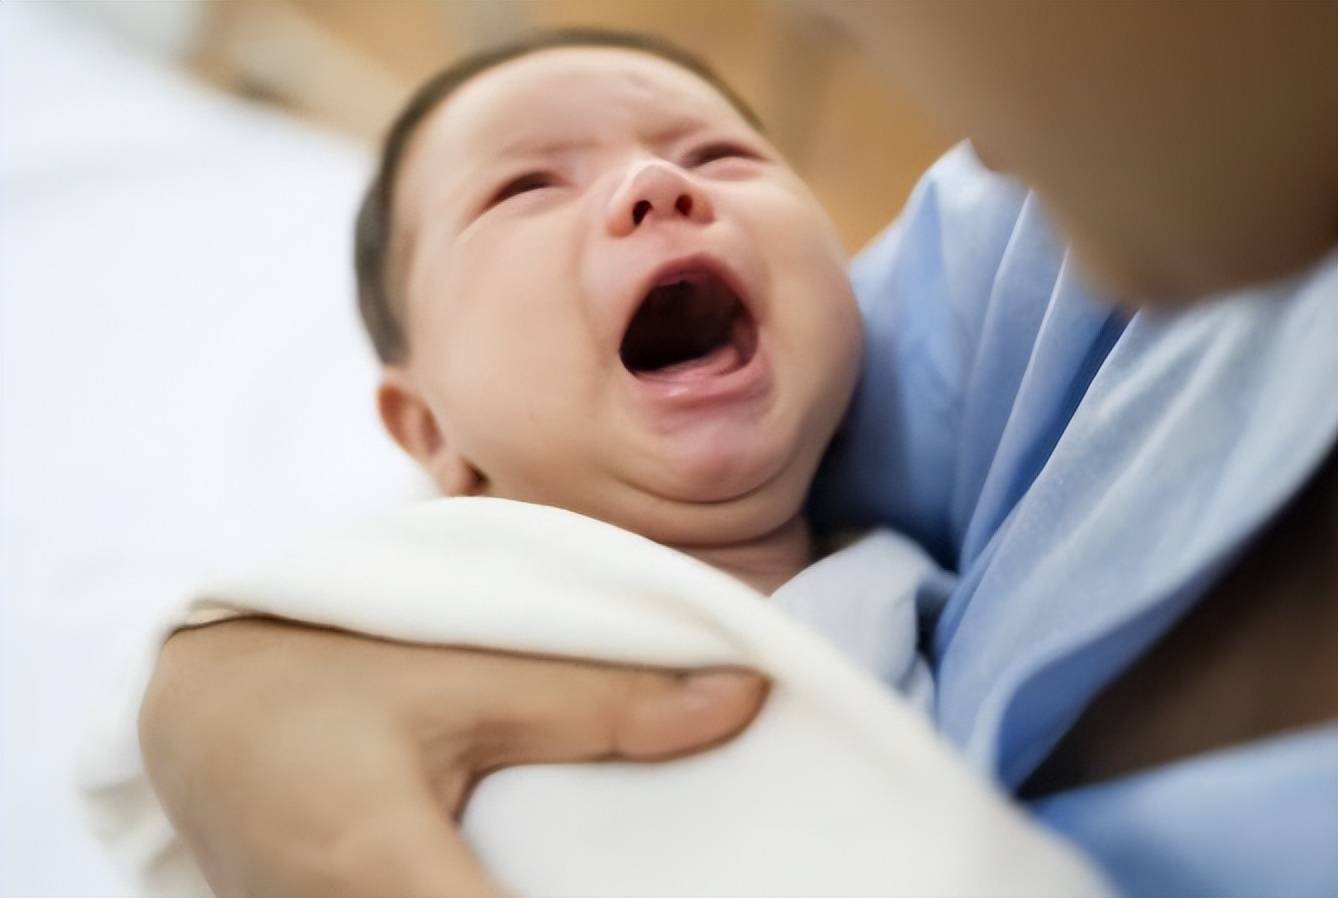 婴儿吃母乳时总＂推＂妈妈,明明饿着肚子,为啥表现得很抗拒？